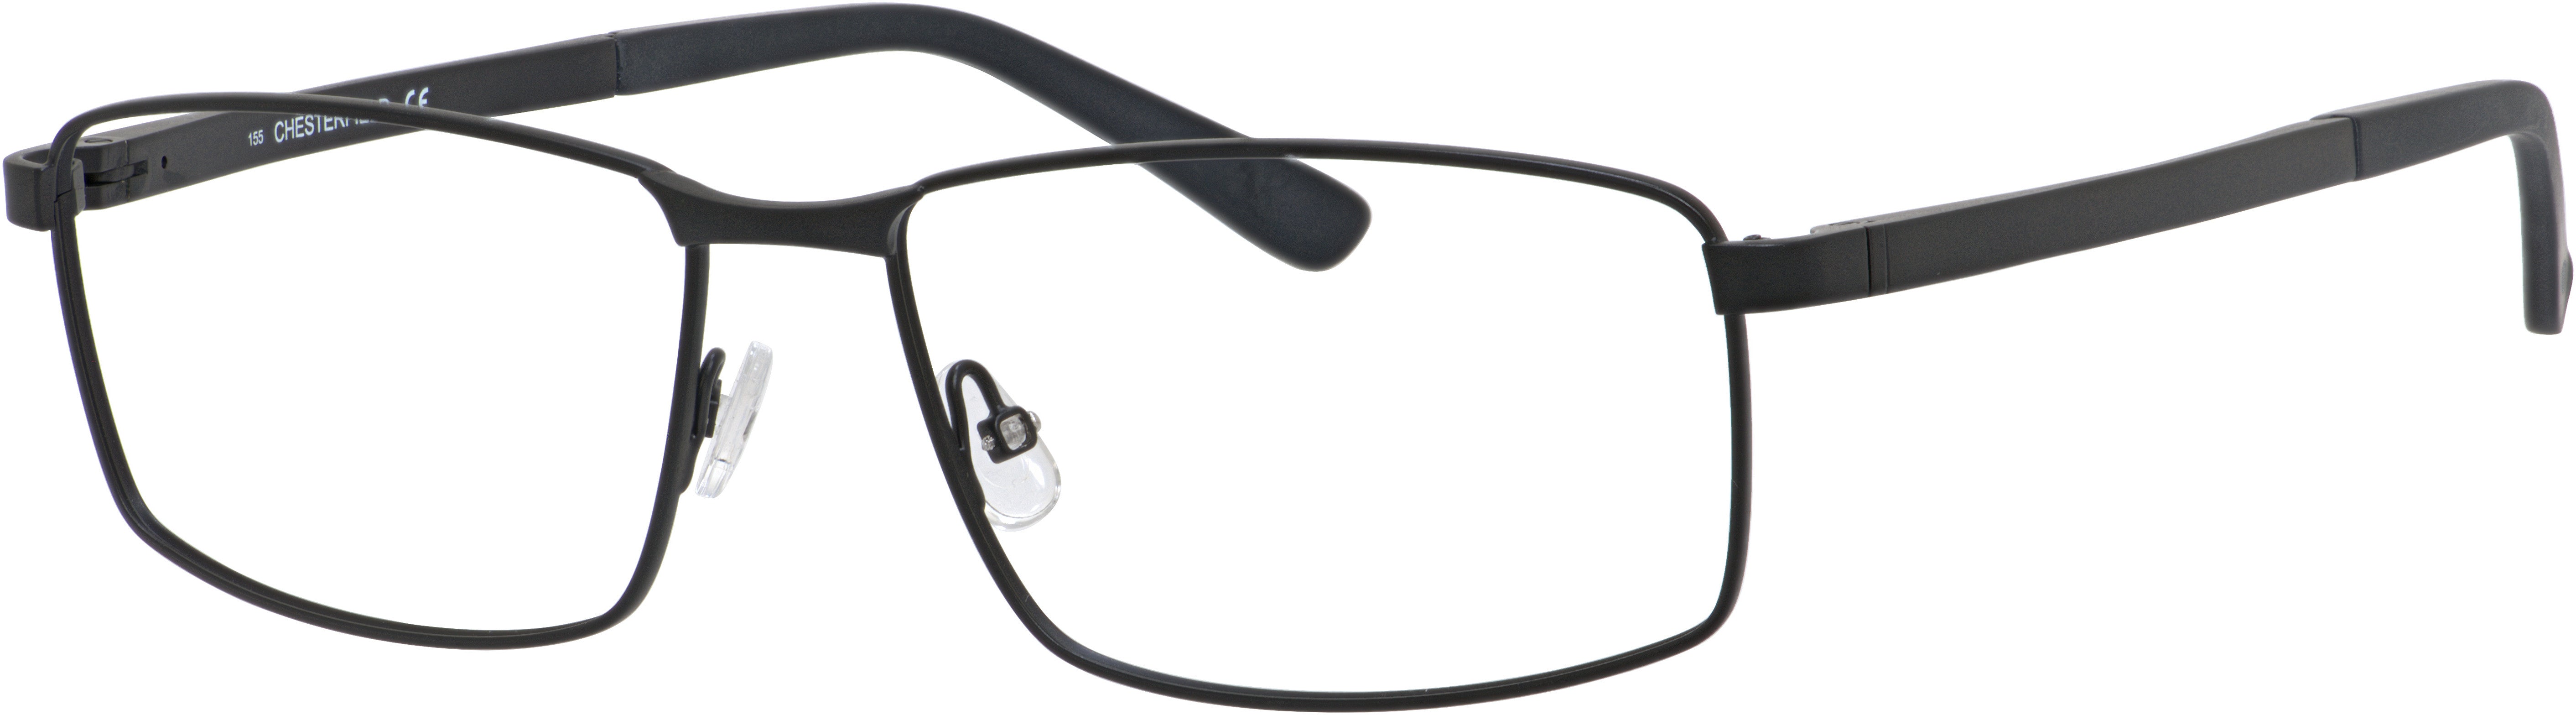  Chesterfield 56XL Rectangular Eyeglasses 0003-0003  Matte Black (00 Demo Lens)